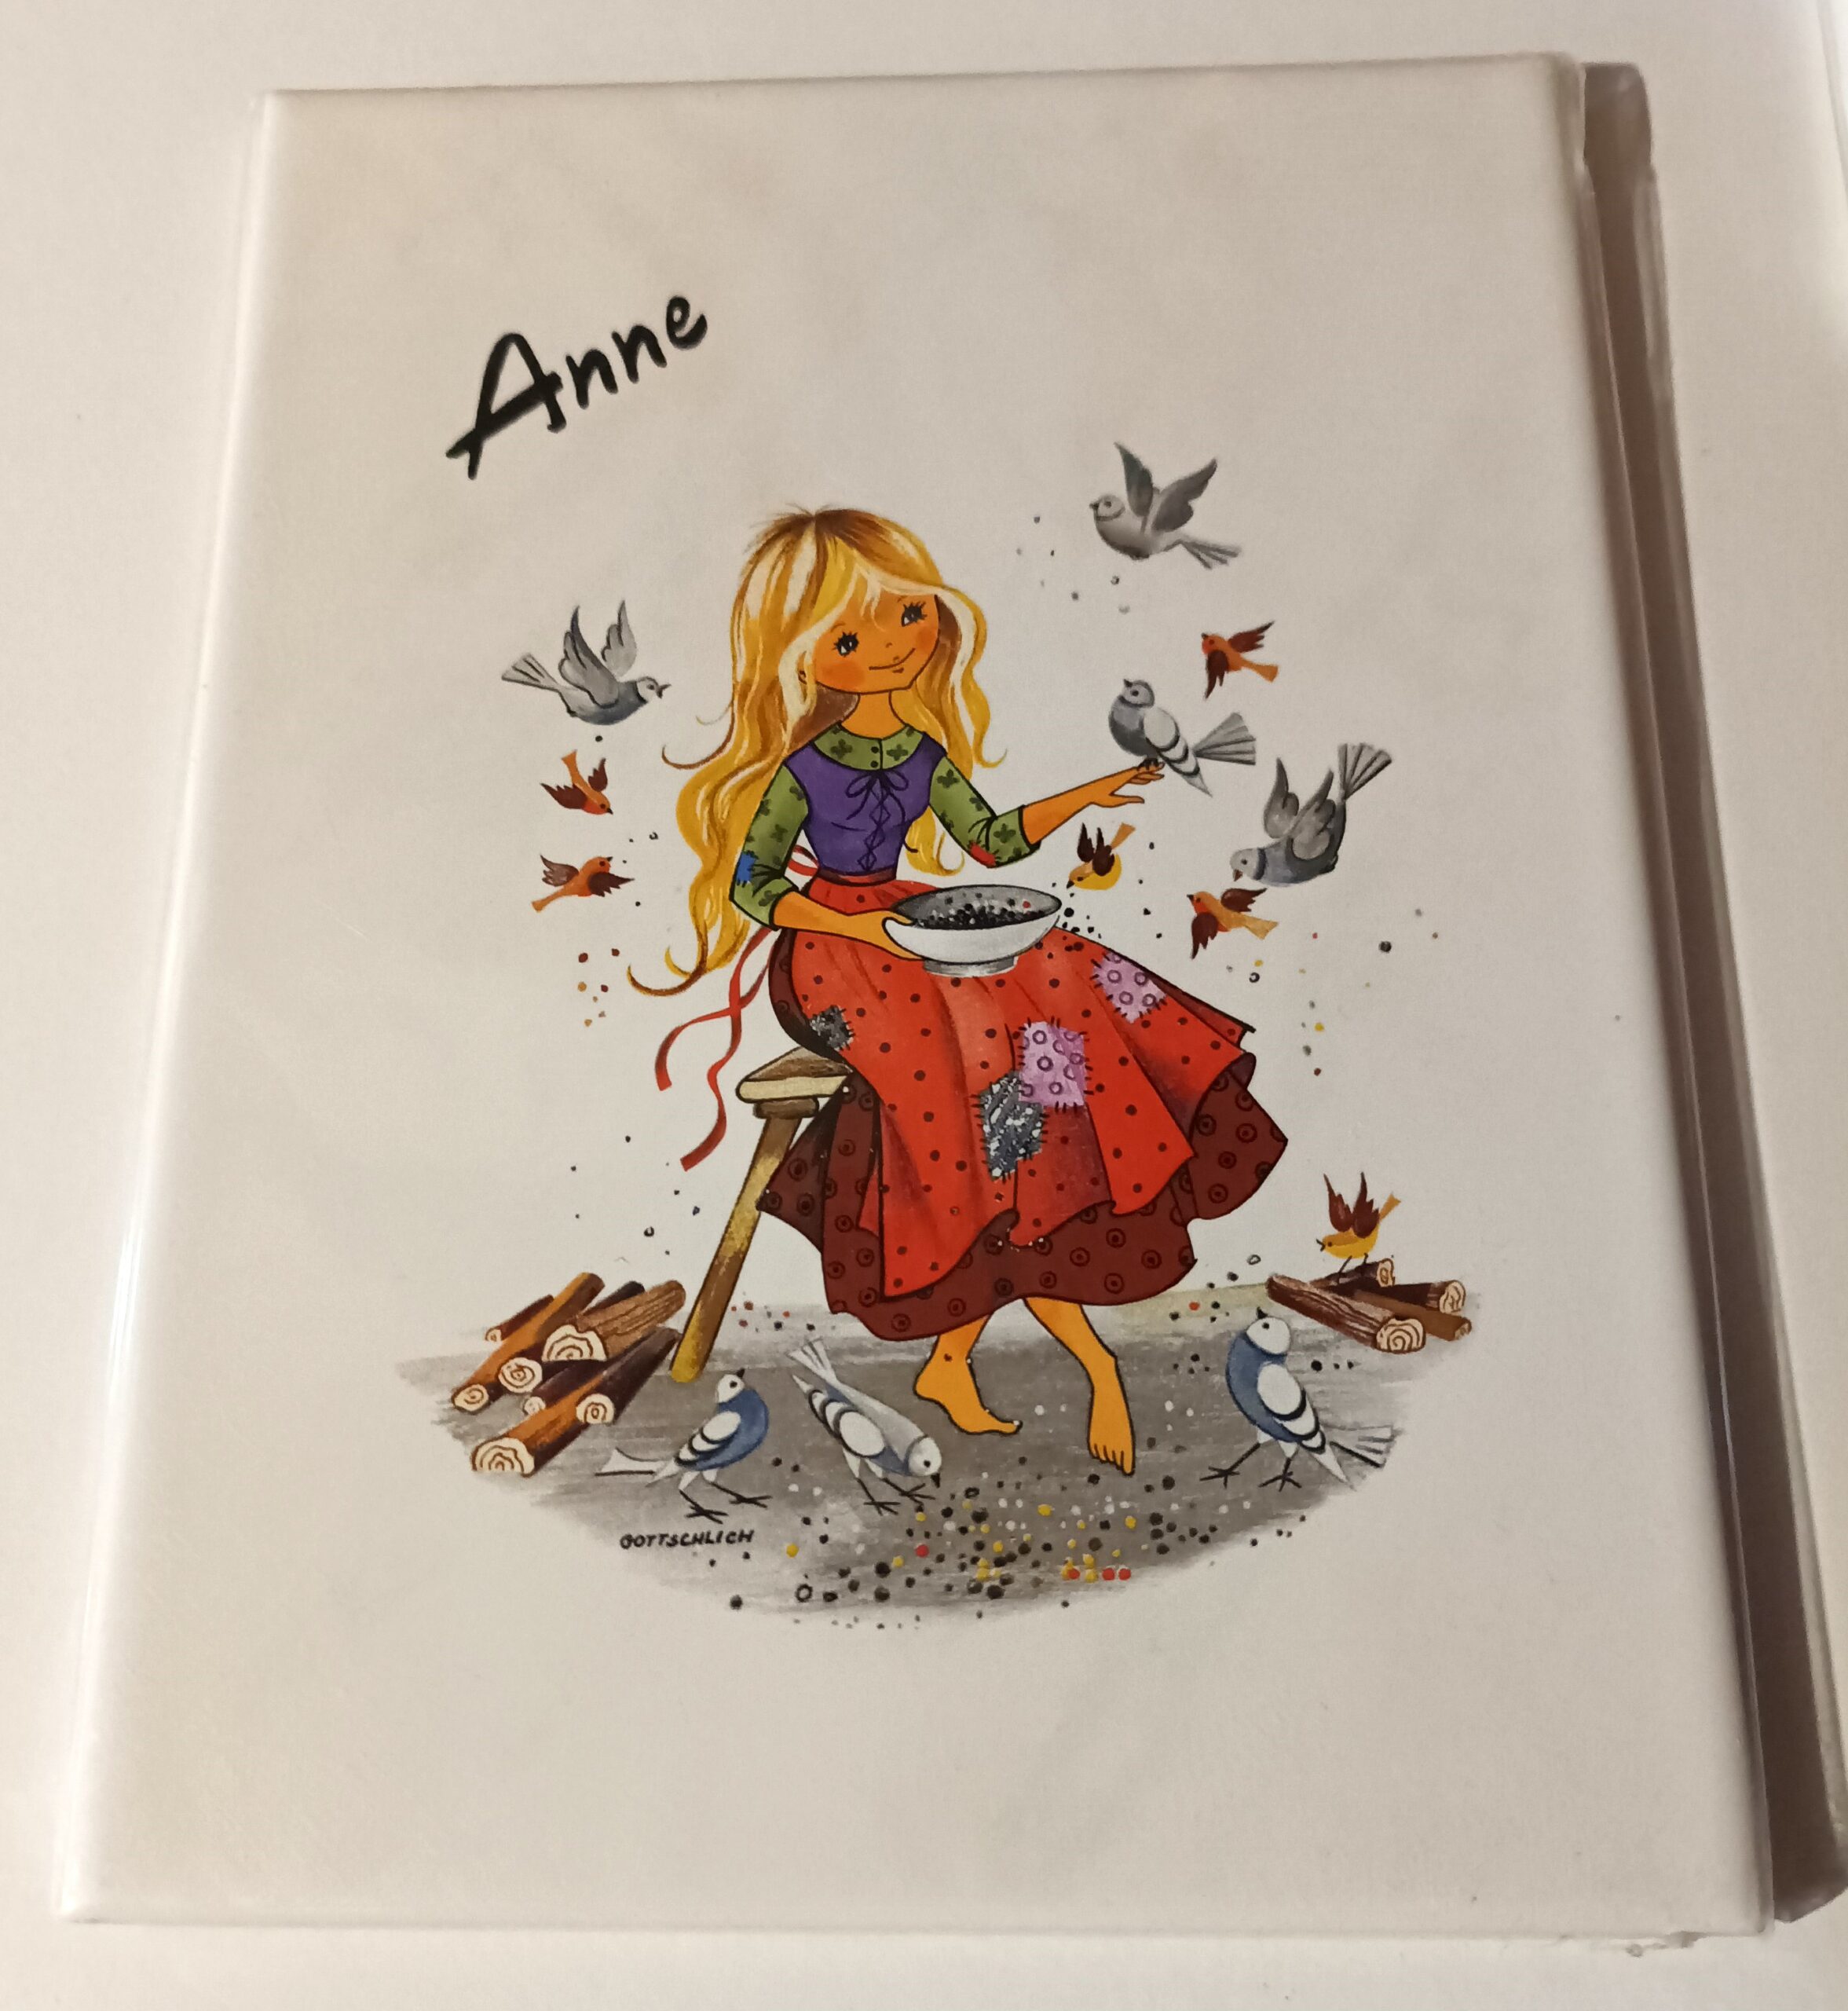 Faïence personnalisée prénom "ANNE" idée cadeau femme